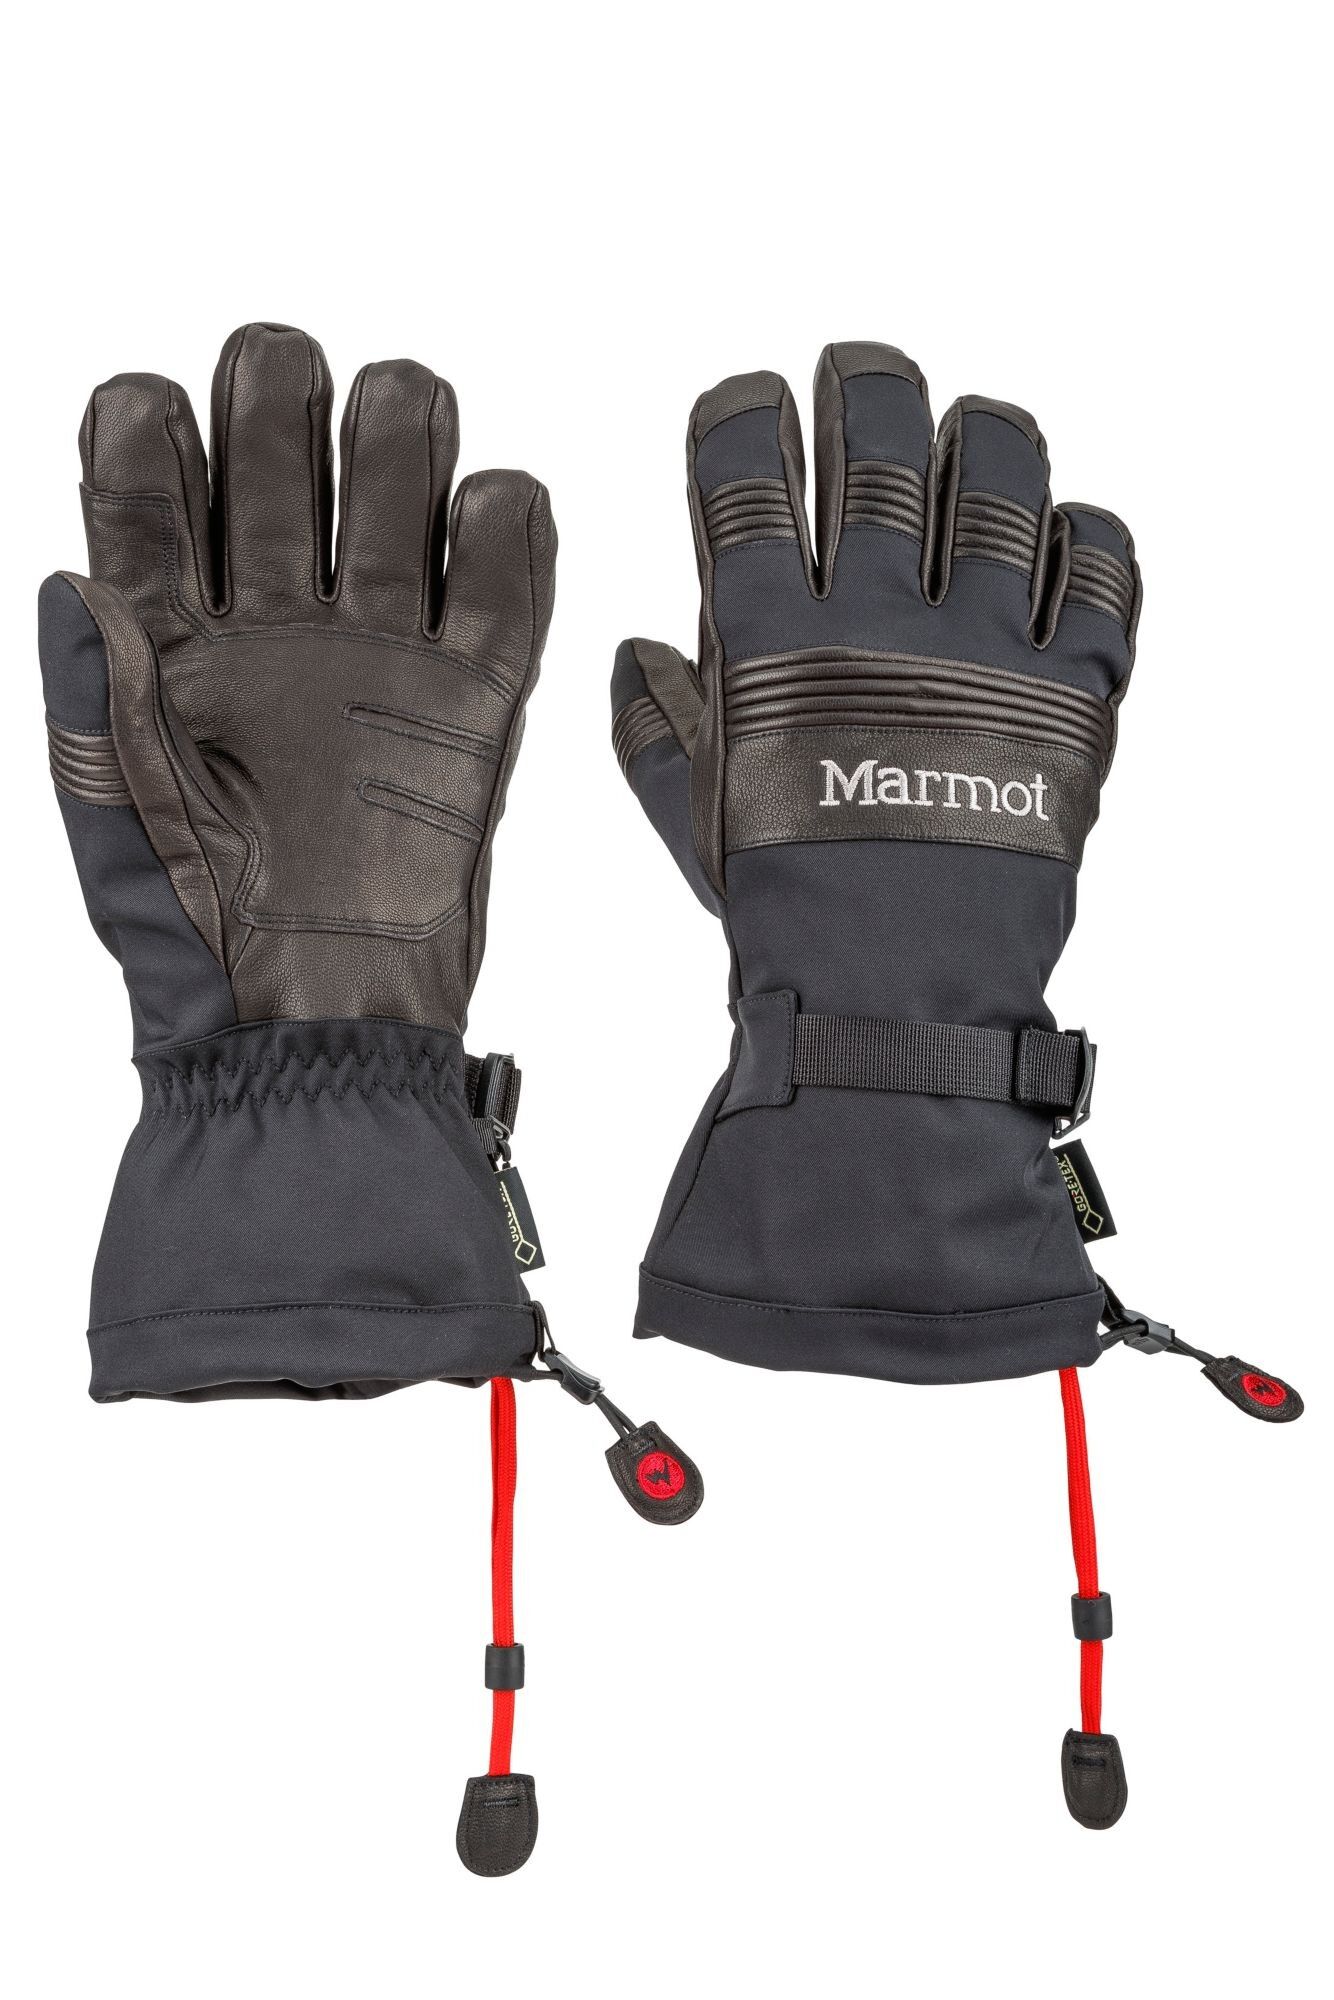 Marmot Ultimate Ski Glove - Ski gloves